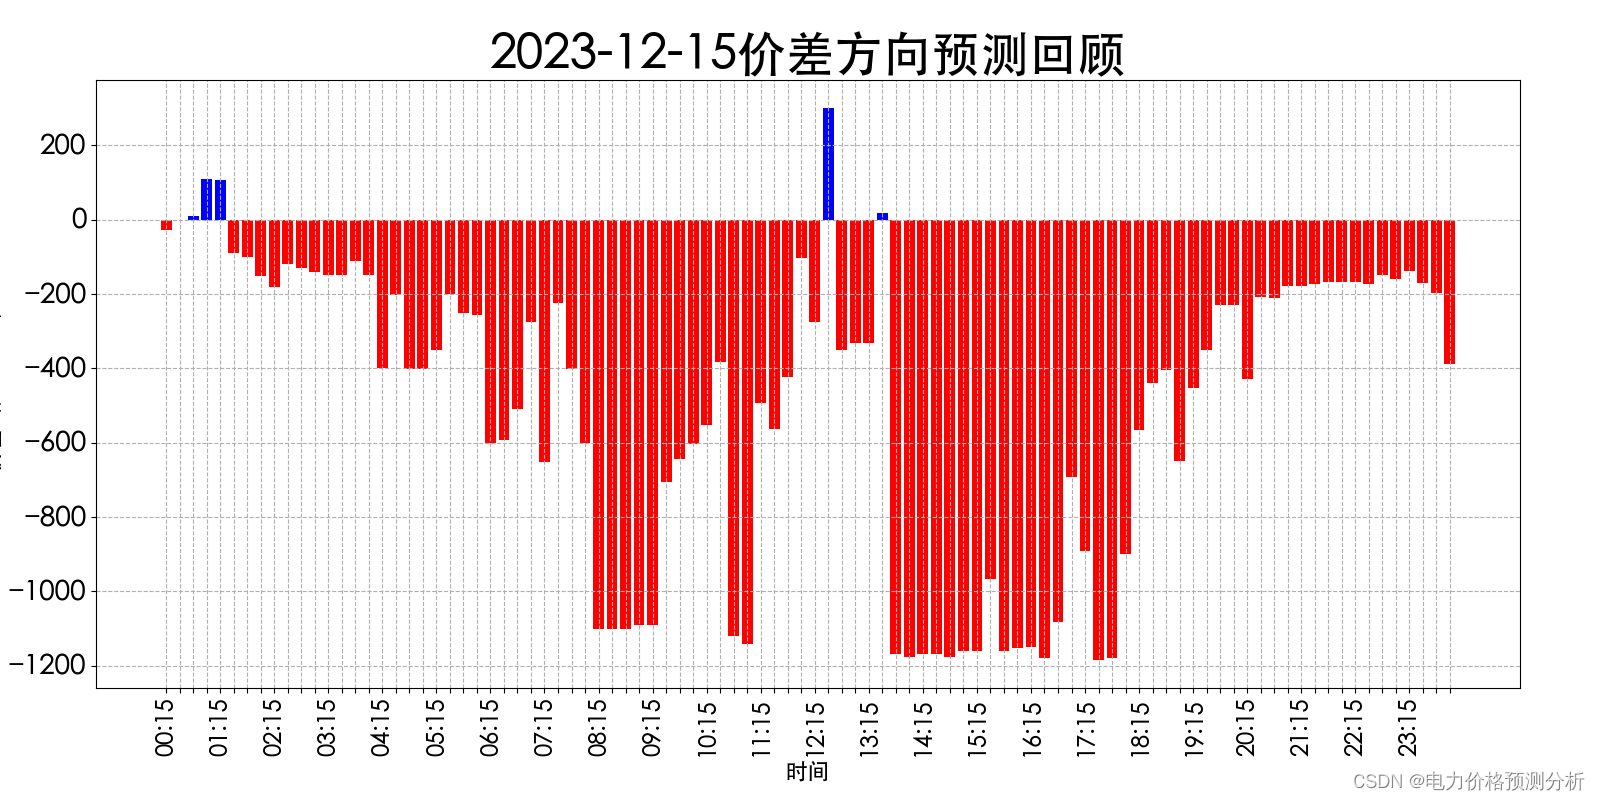 山西电力市场日前价格预测【2023-12-17】